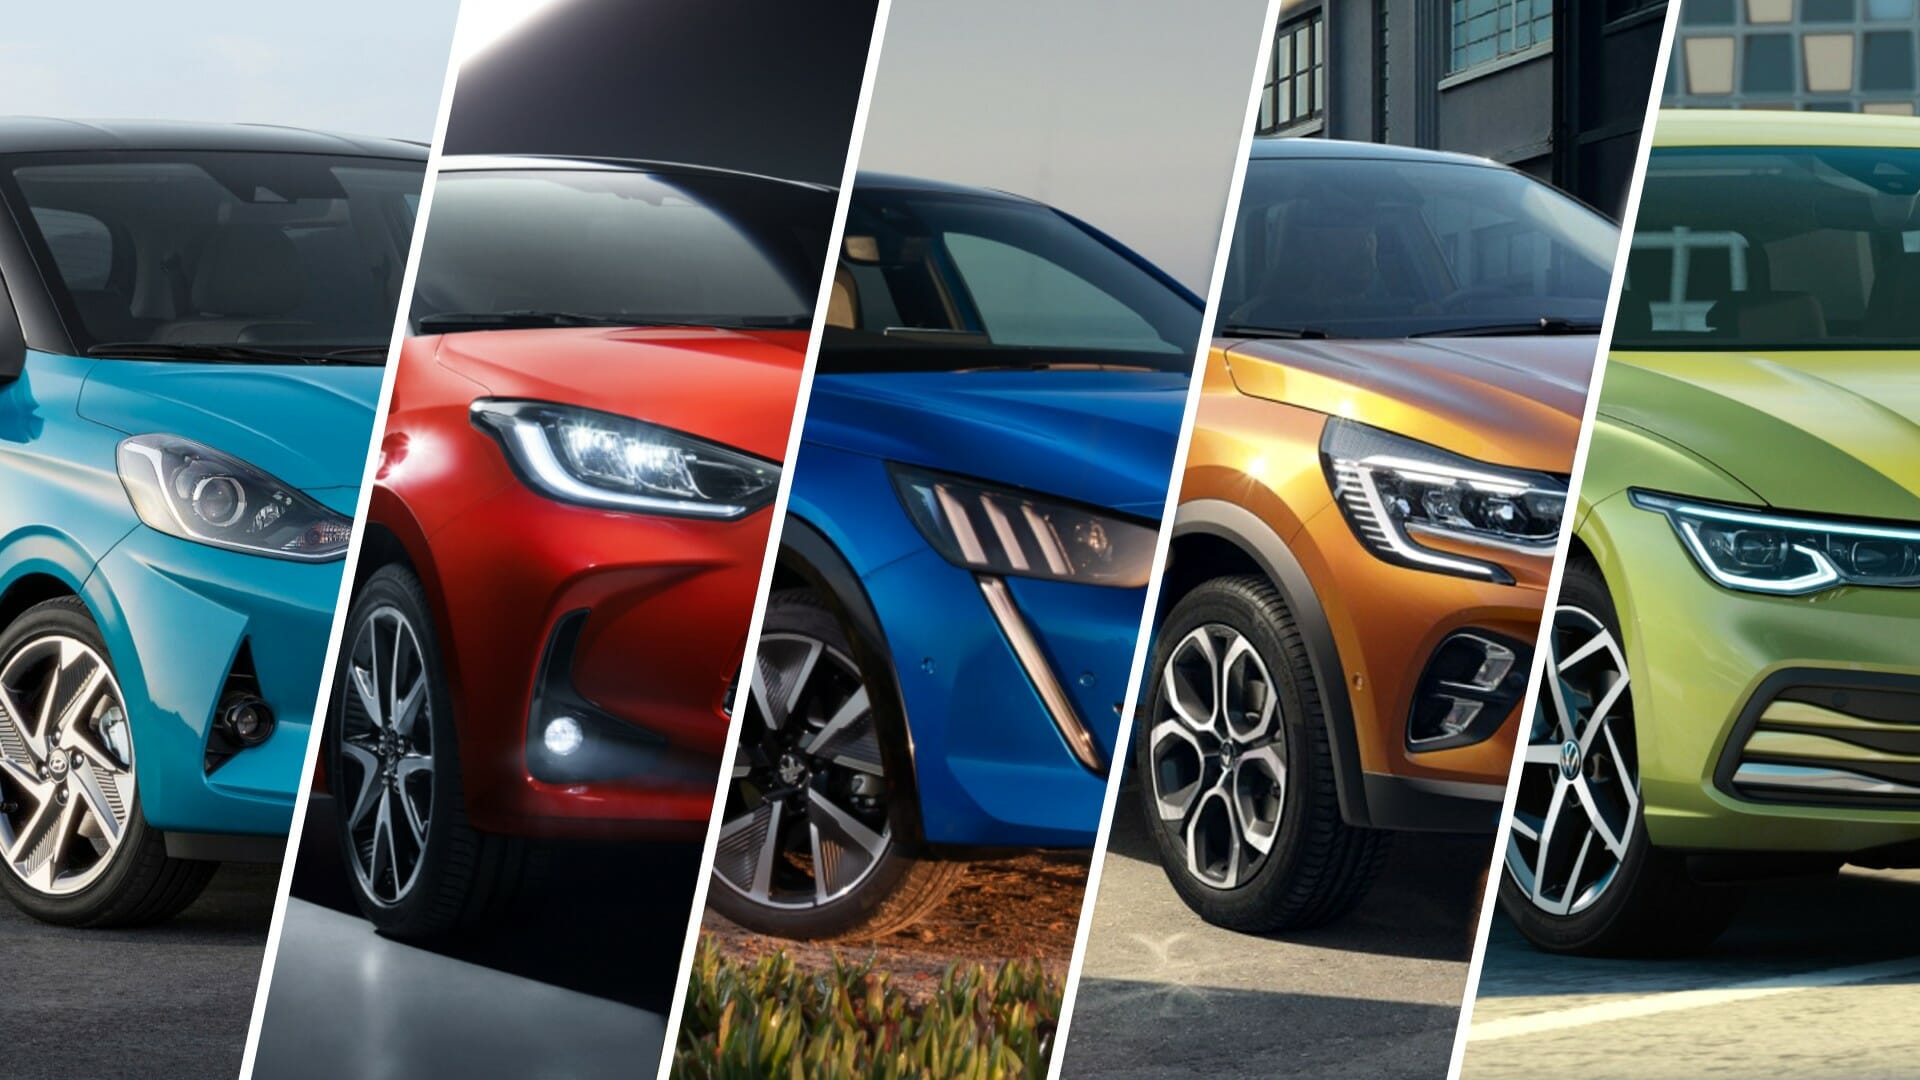 Πέντε νέα μοντέλα αυτοκινήτων που αξίζει να περιμένεις το 2020 [pics]